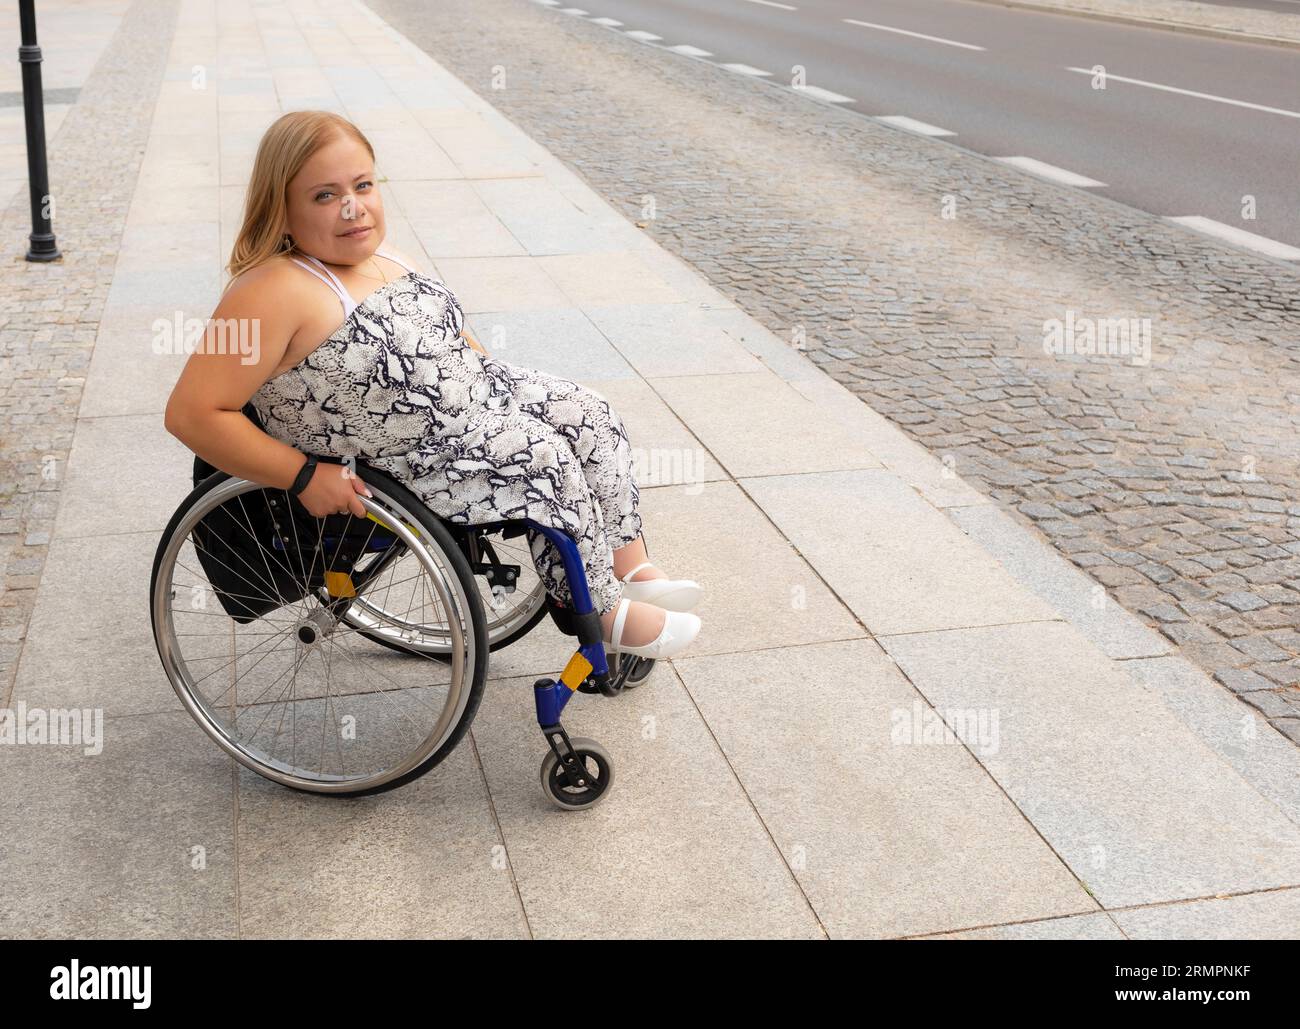 Souriant Jeune jolie femme avec petite stature sur les stands de fauteuil roulant sur l'arrêt de bus extérieur en attente des transports publics le jour de l'été. Femelle adulte avec Banque D'Images